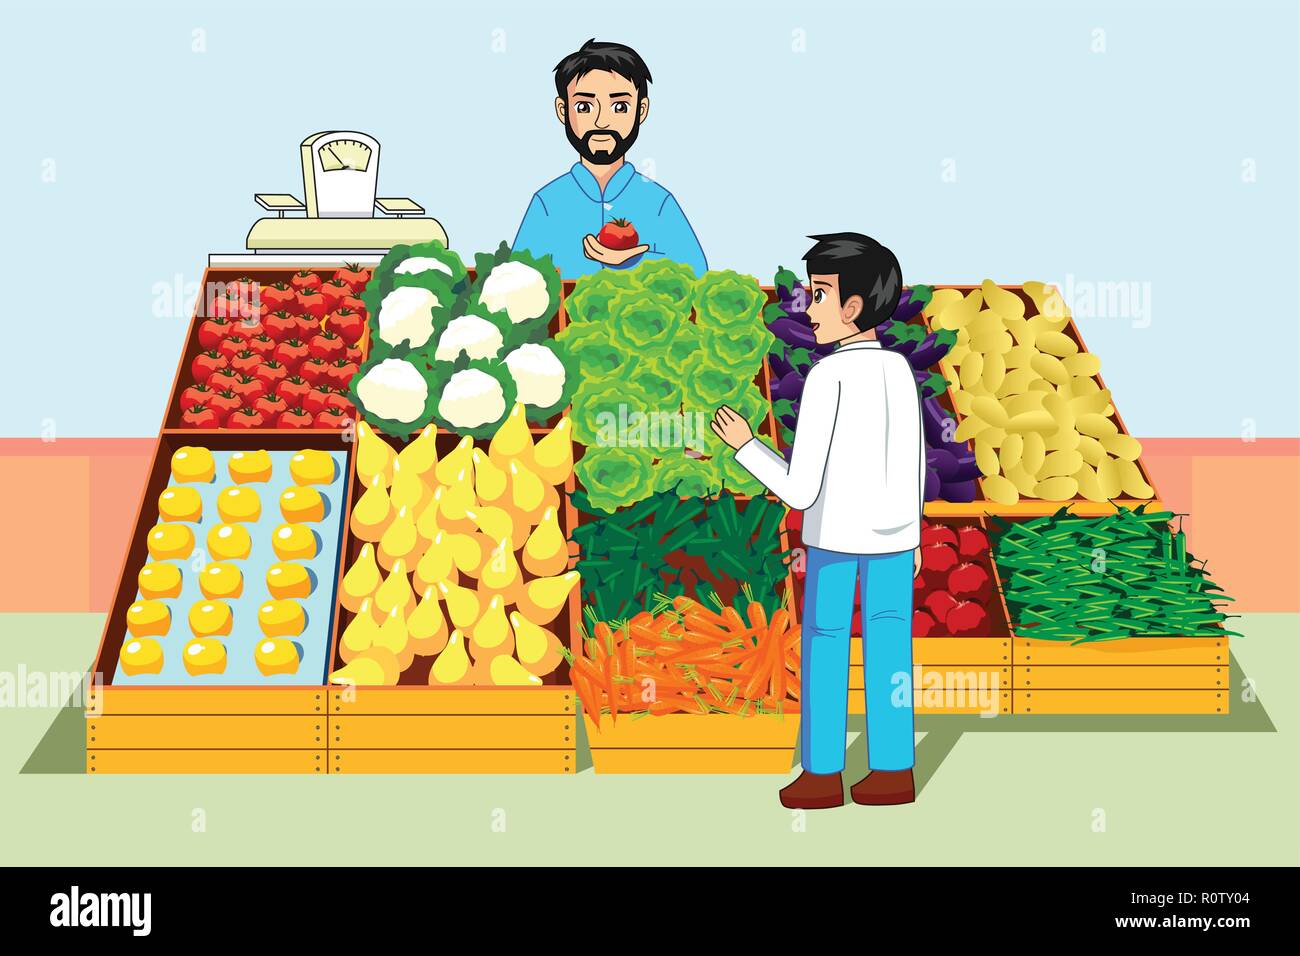 Un vecteur illustration de garçon l'achat de fruits et légumes au marché de fermiers Illustration de Vecteur